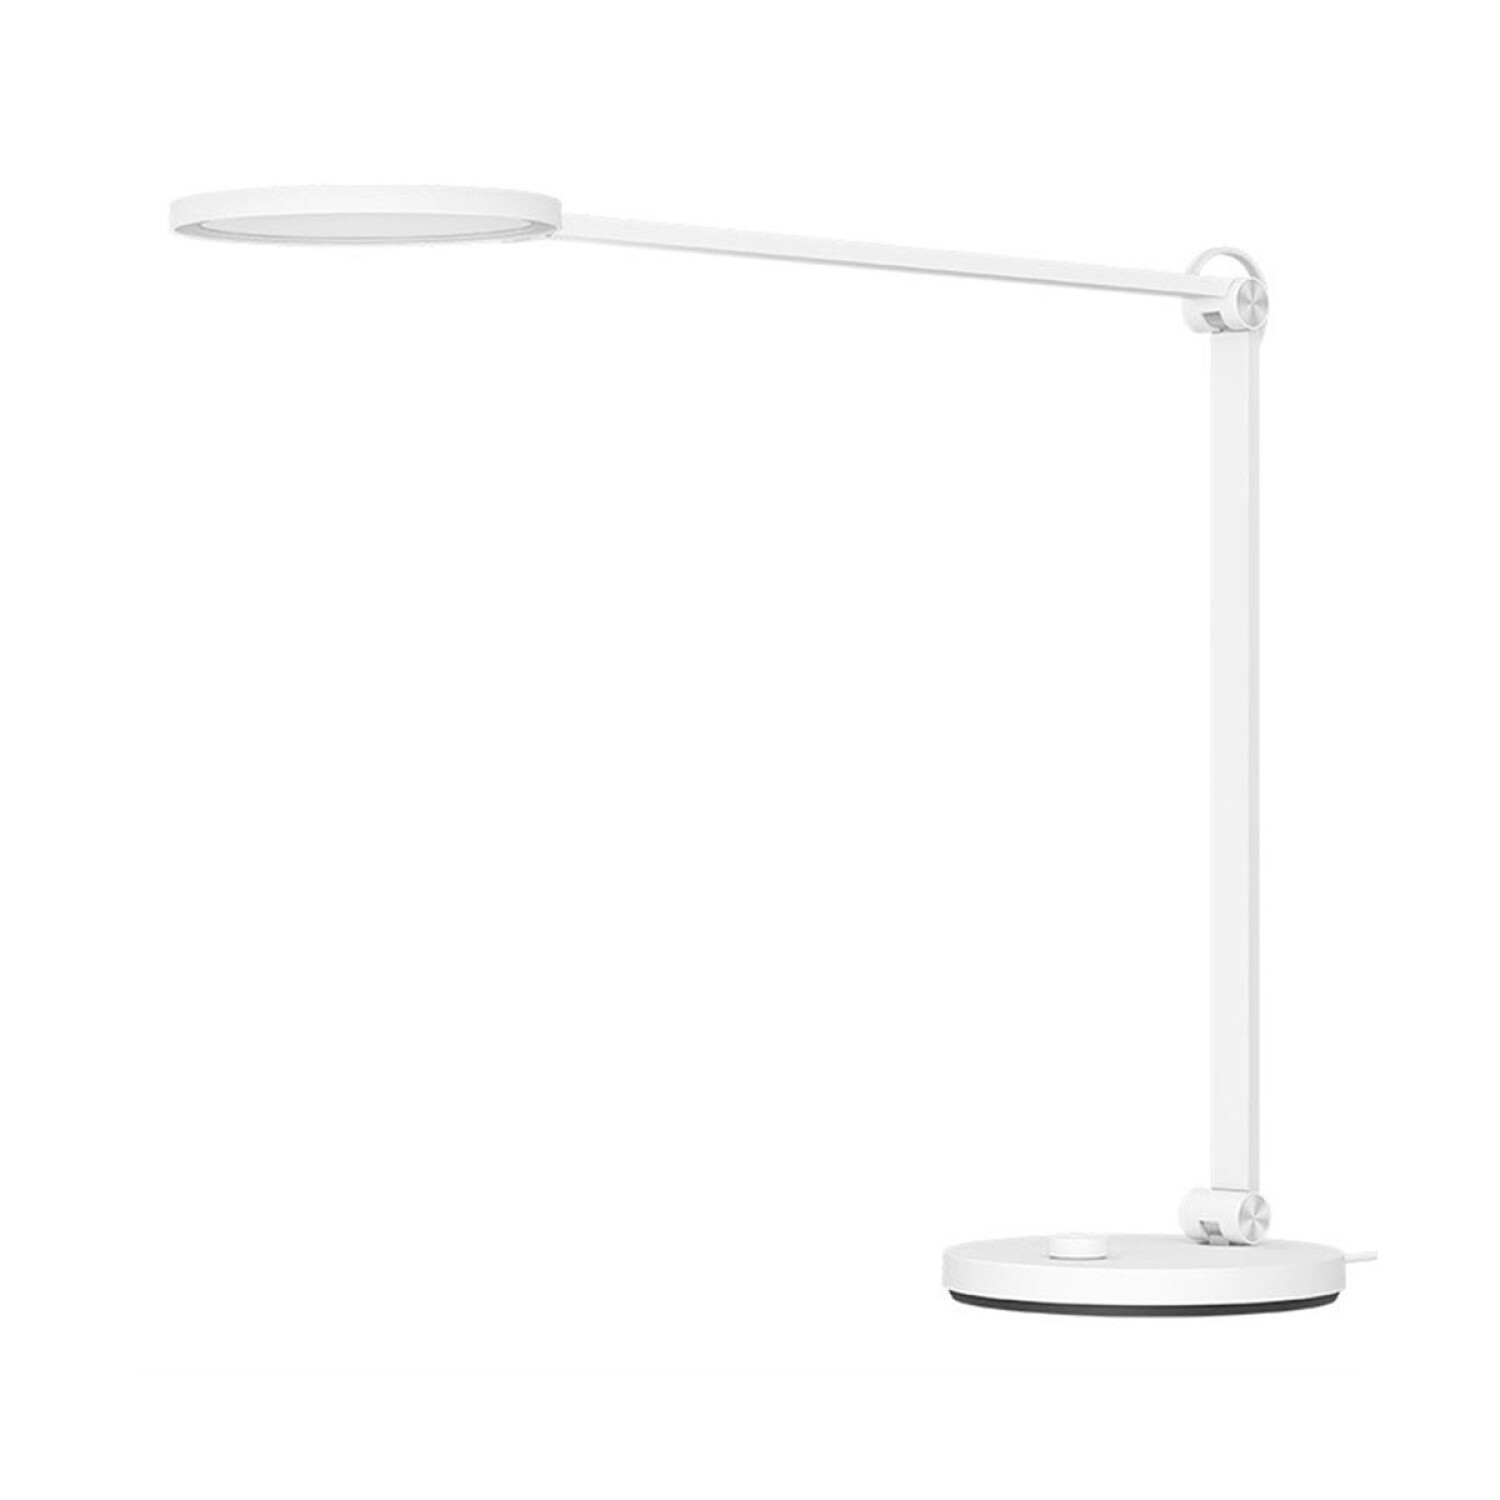 MI SMART LED DESK LAMP PRO XIAOMI  LAMPARA DE ESCRITORIO SMART - Blanco —  Cover company